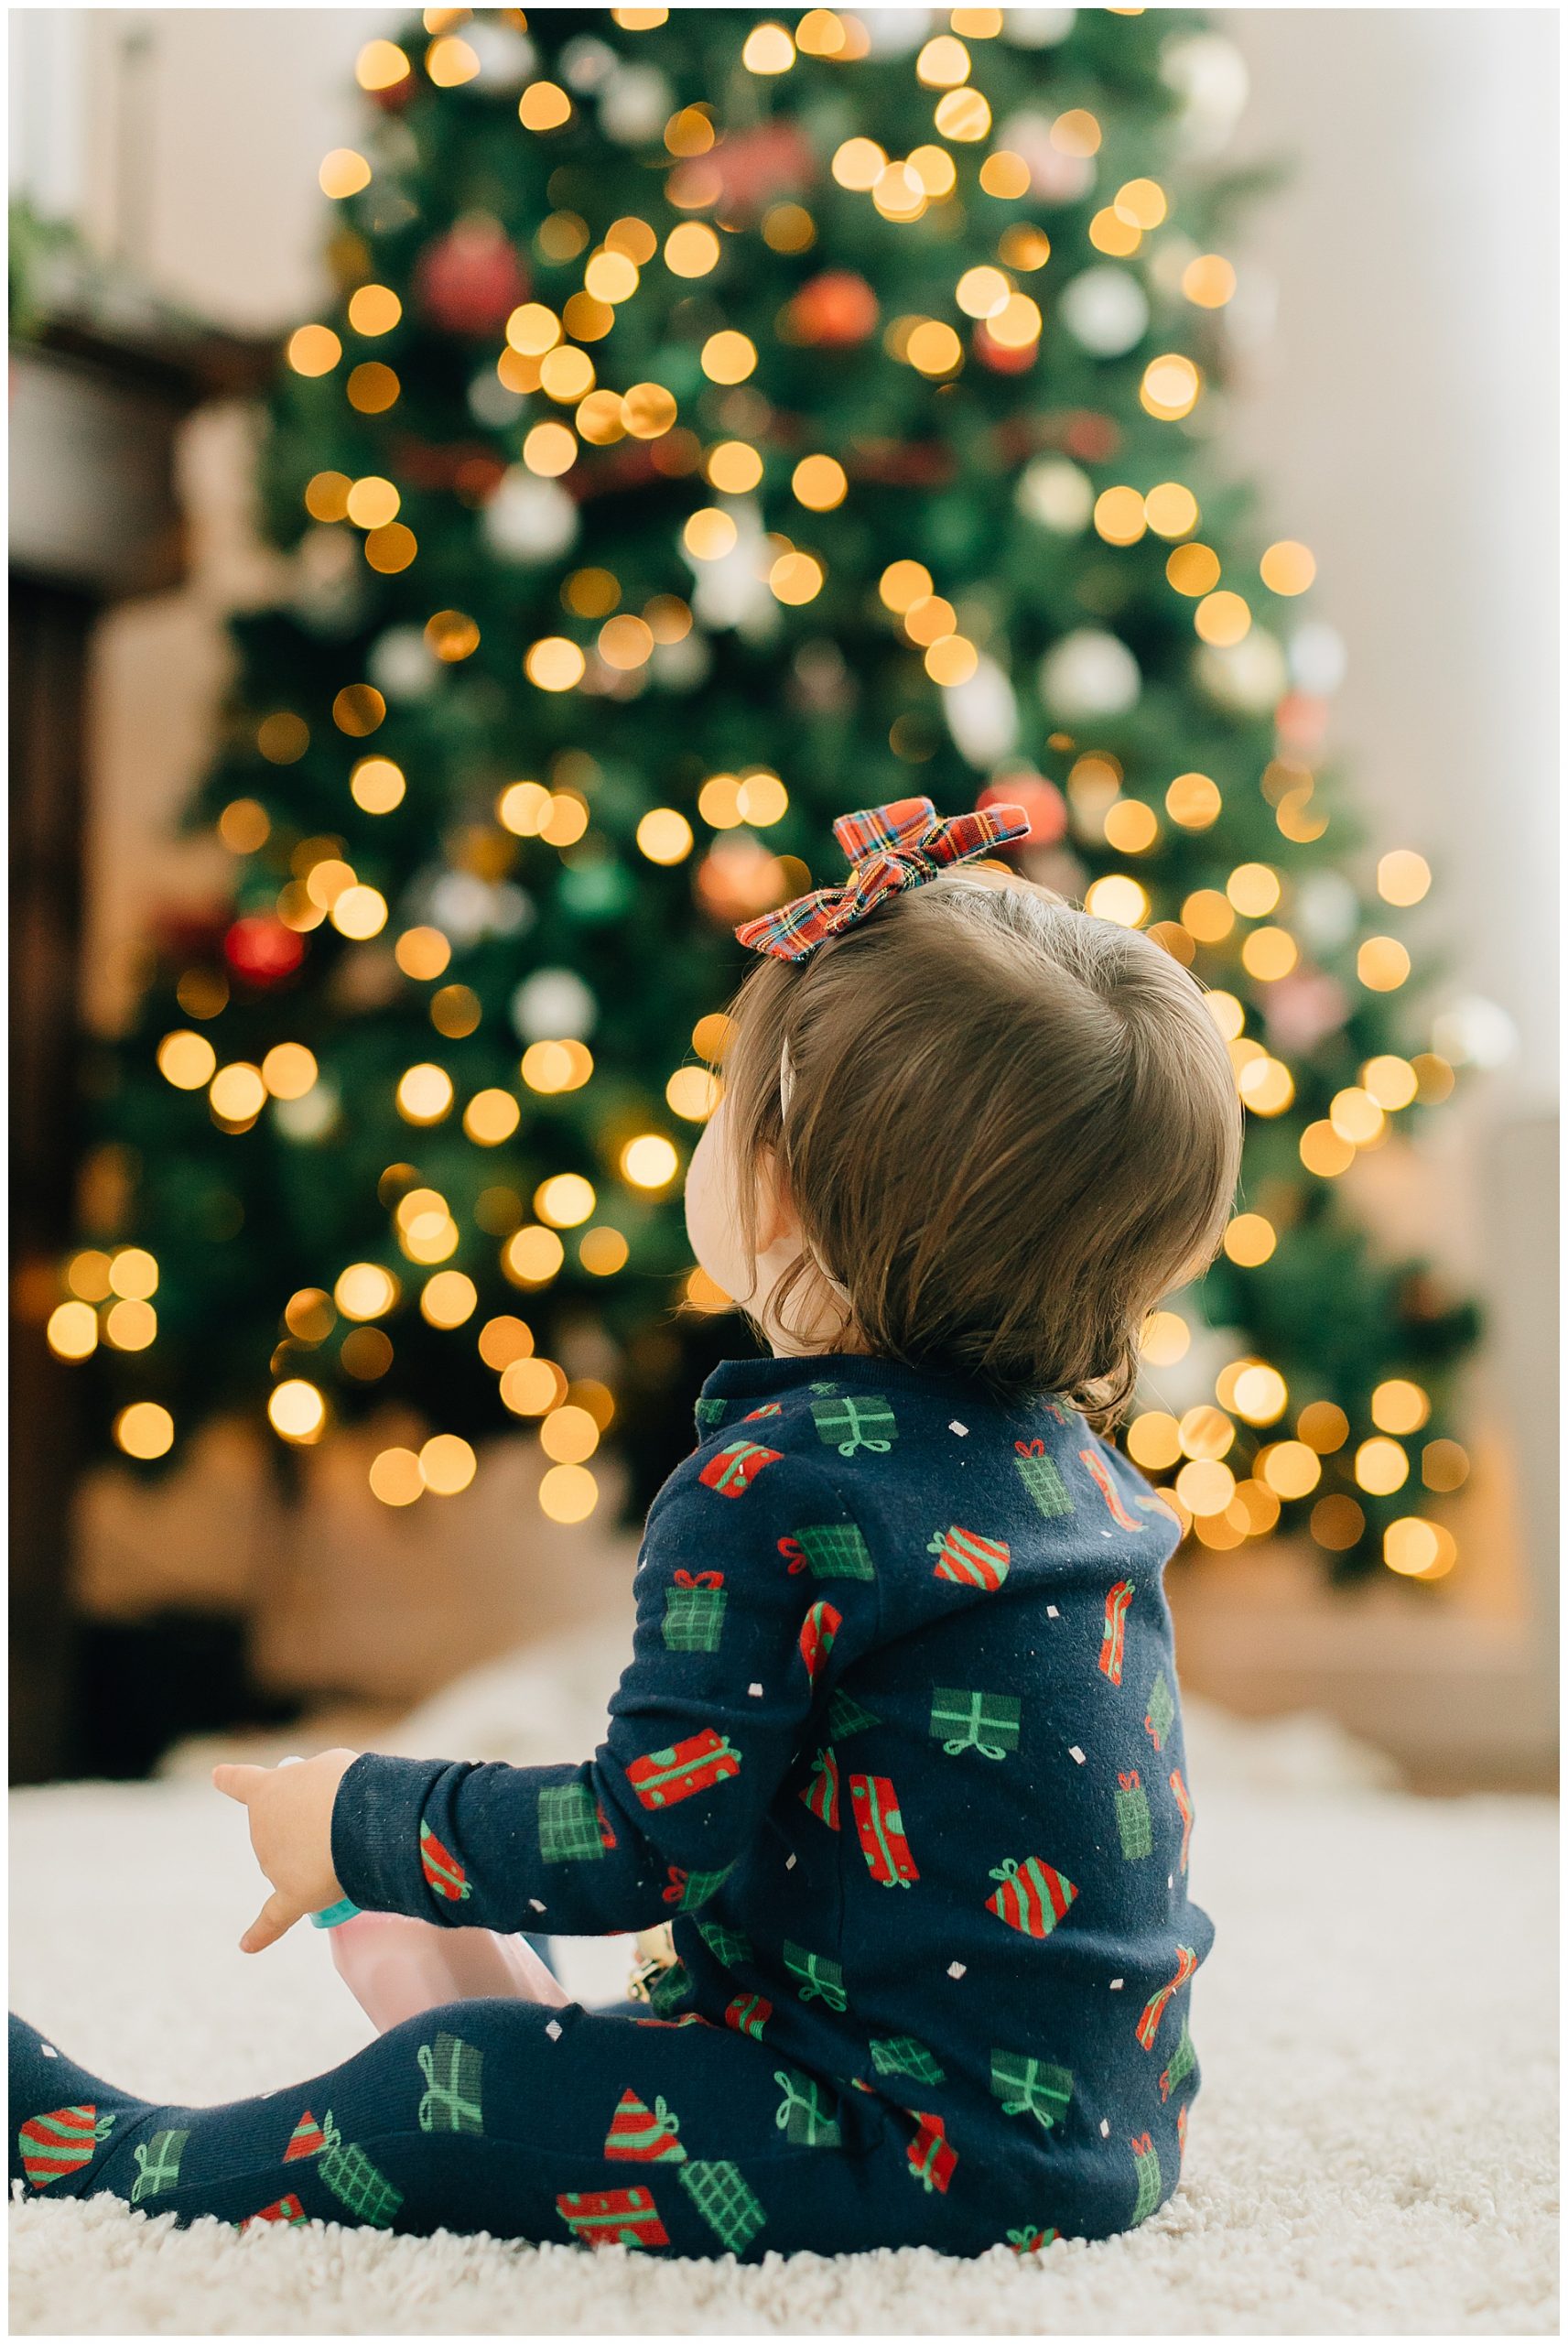 Giáng sinh đã đến rồi! Dùng ngay bộ lọc làm mờ ánh đèn bokeh nền phông để tạo ra những hình ảnh Giáng sinh đầy màu sắc và ấn tượng. Những mảng sáng lung linh sẽ giúp bạn tạo nên khung cảnh Giáng sinh đầy lãng mạn và sáng tạo.